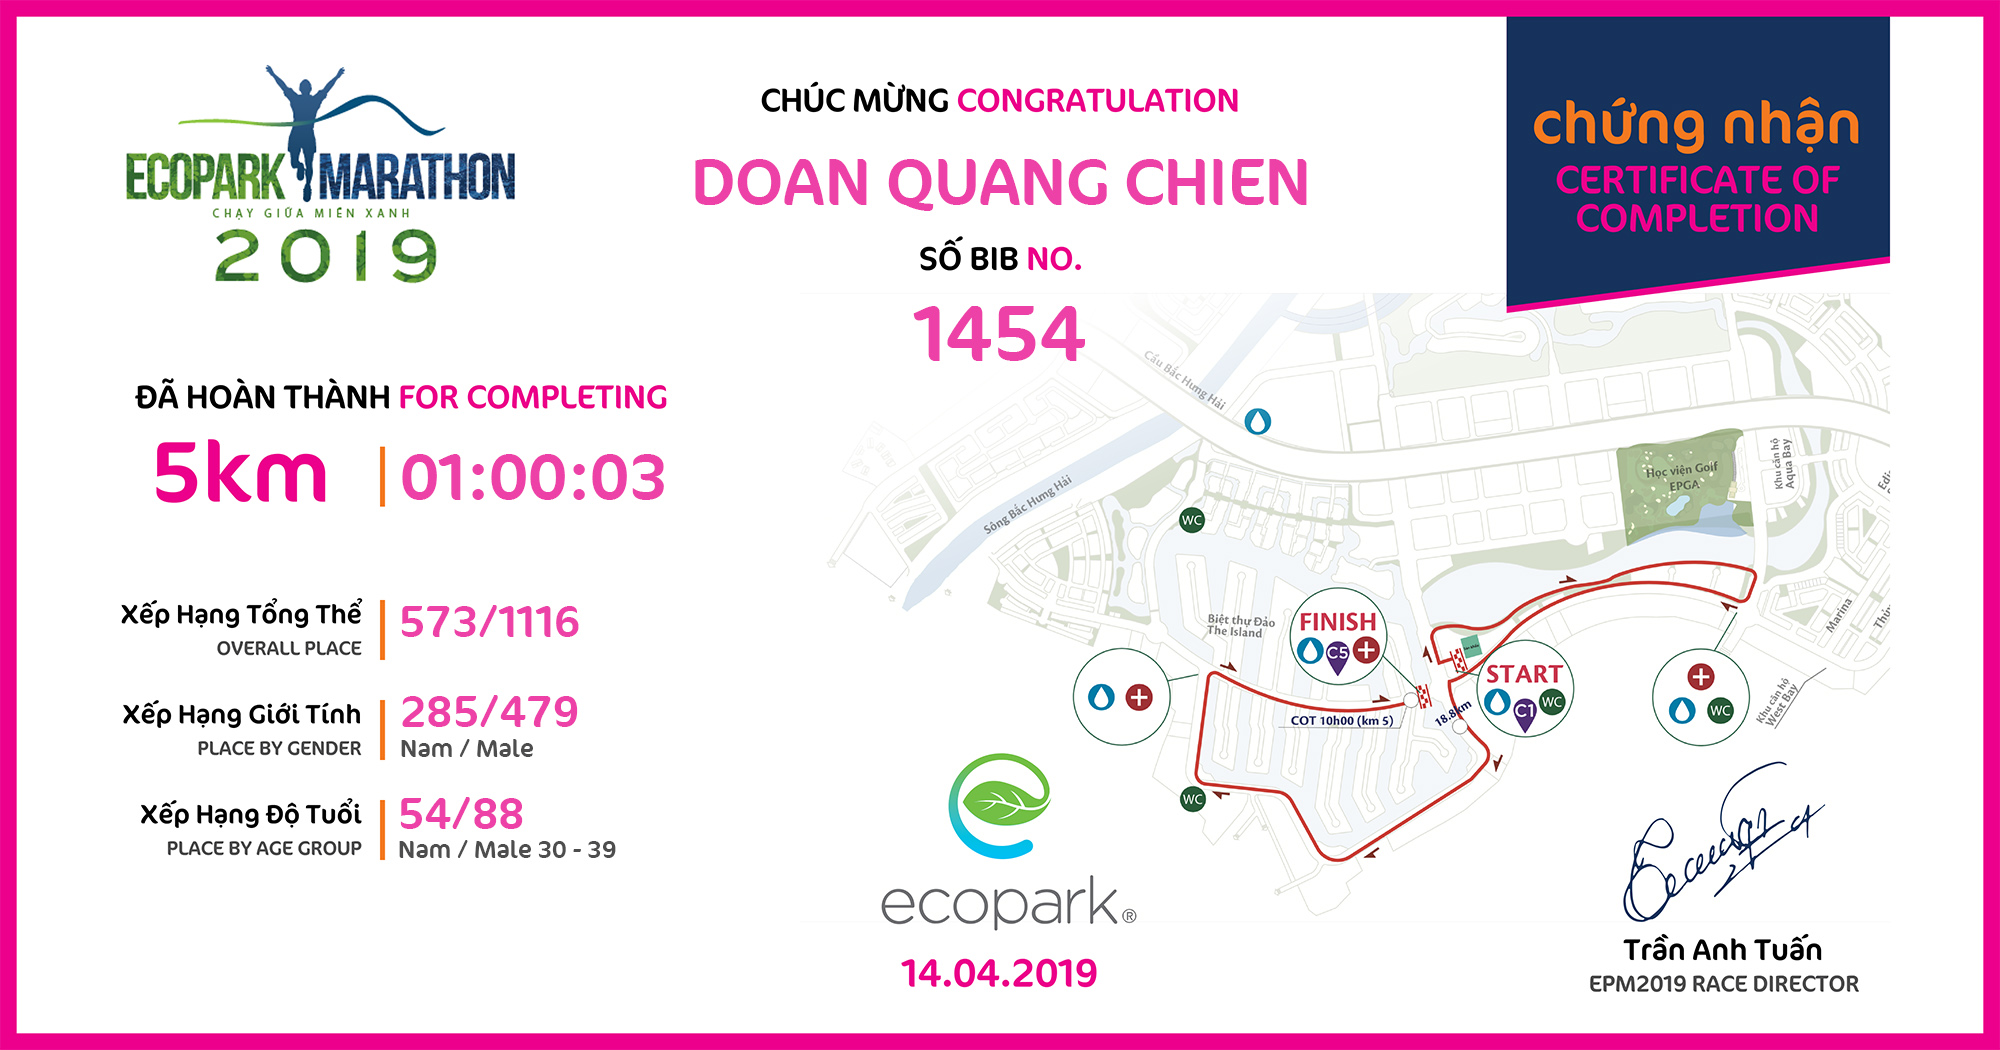 1454 - Doan Quang Chien